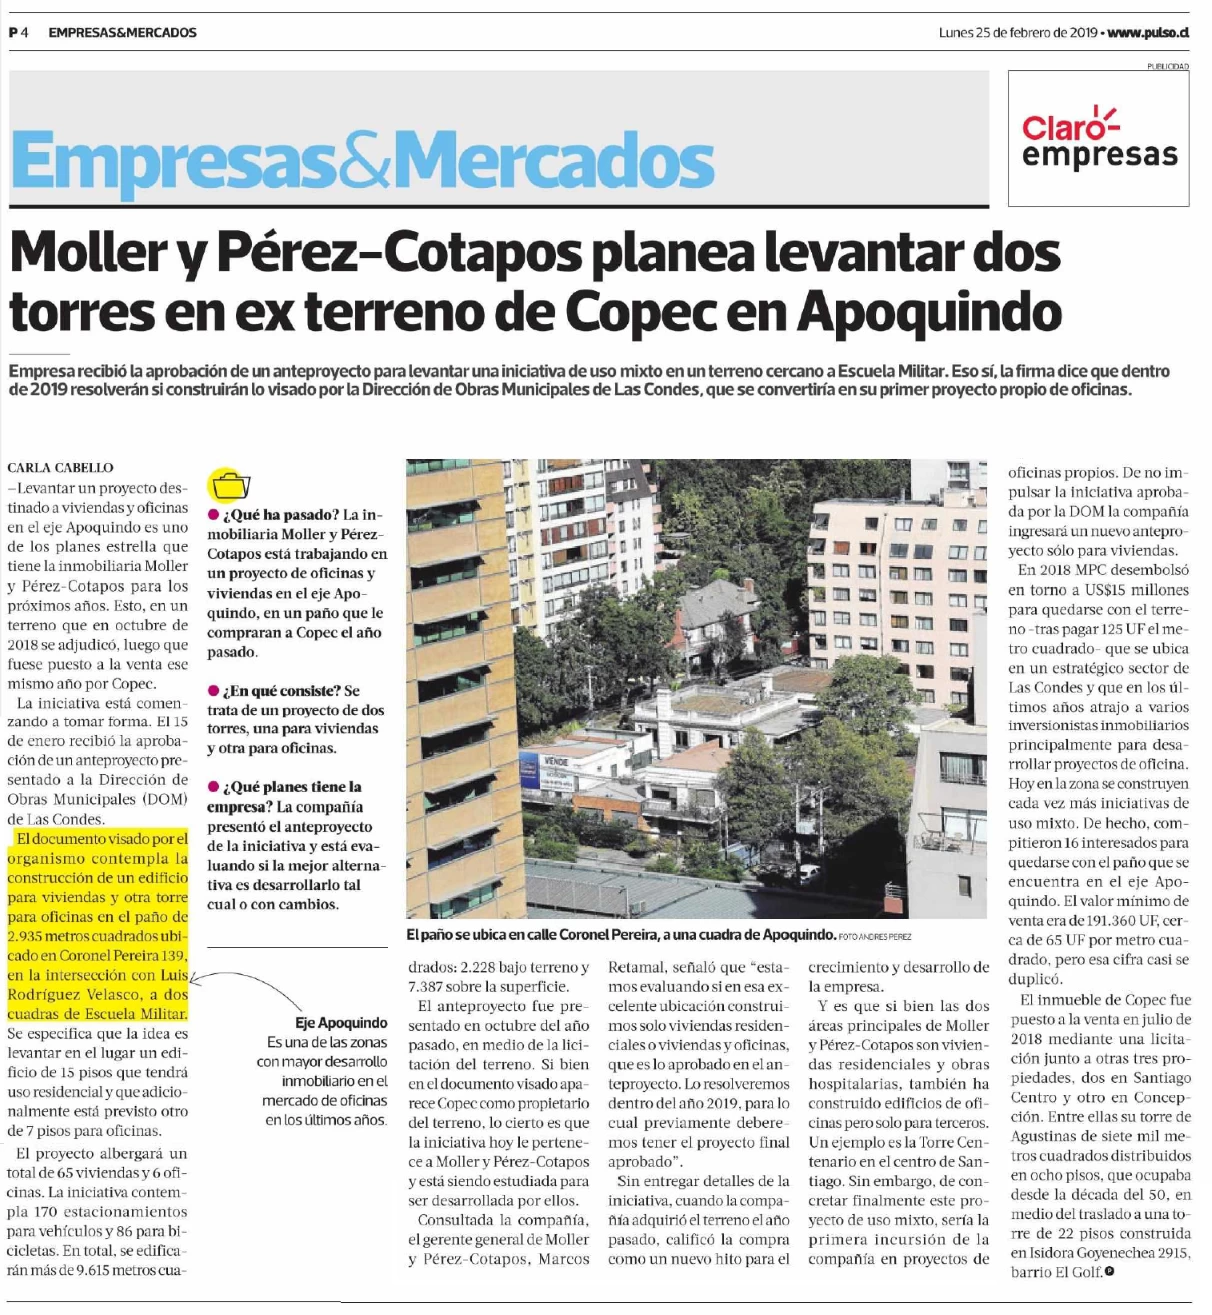 Moller y Pérez-Cotapos planea levantar dos torres en ex terreno de Copec en Apoquindo